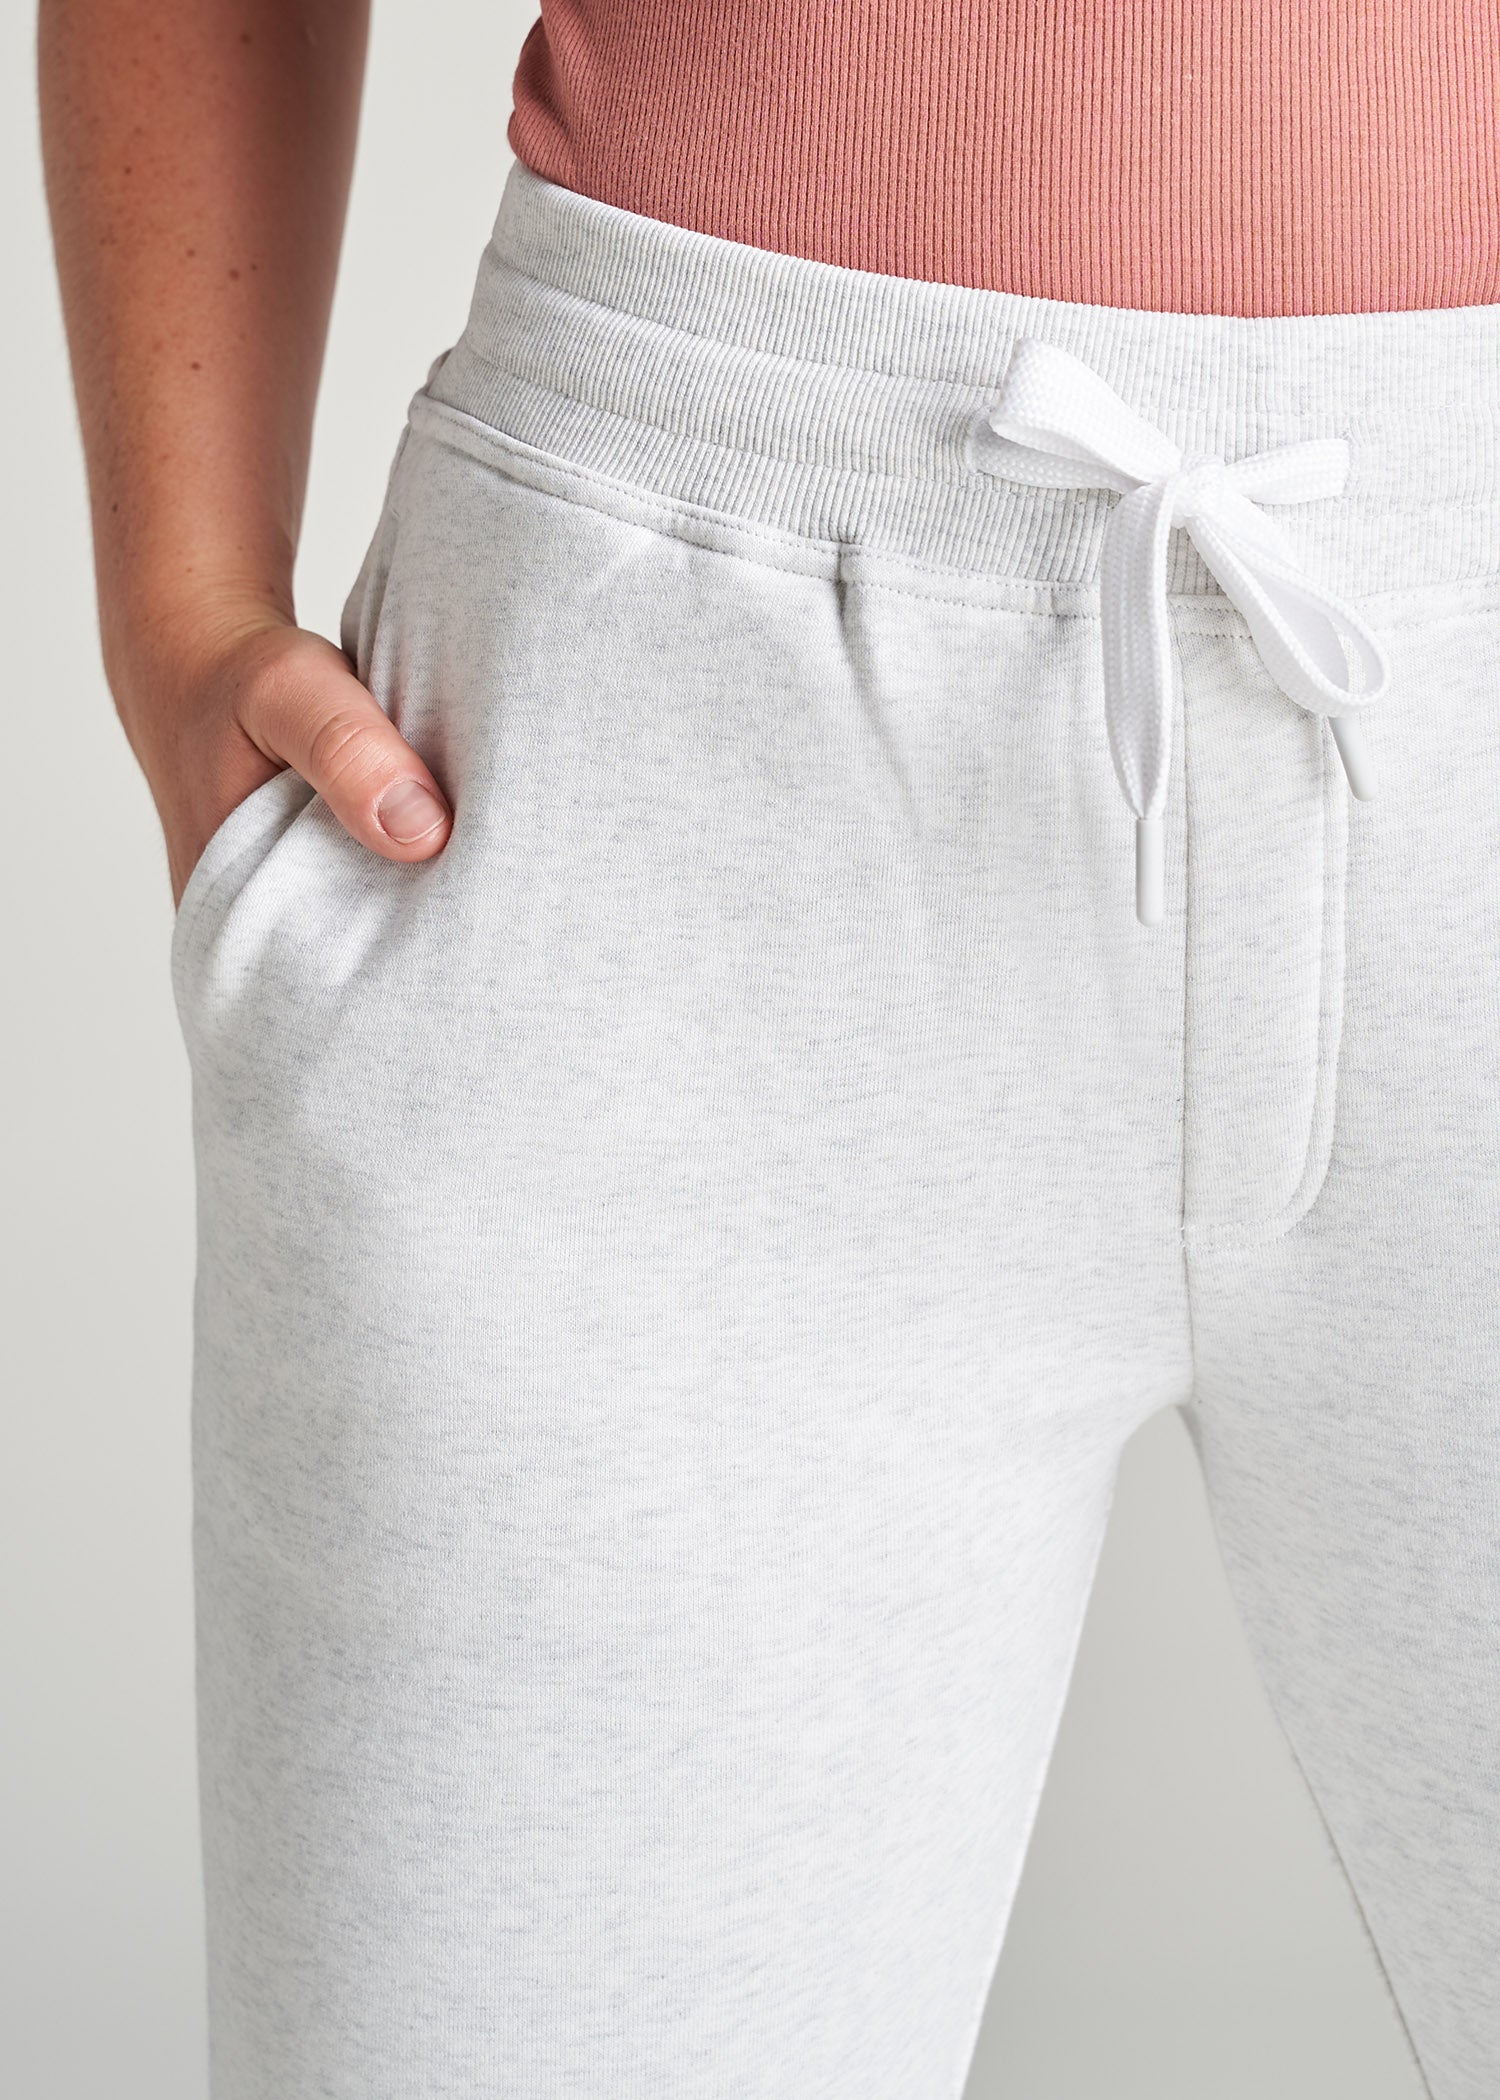 WKND Fleece Open-Bottom Women's Tall Sweatpants in Grey Mix